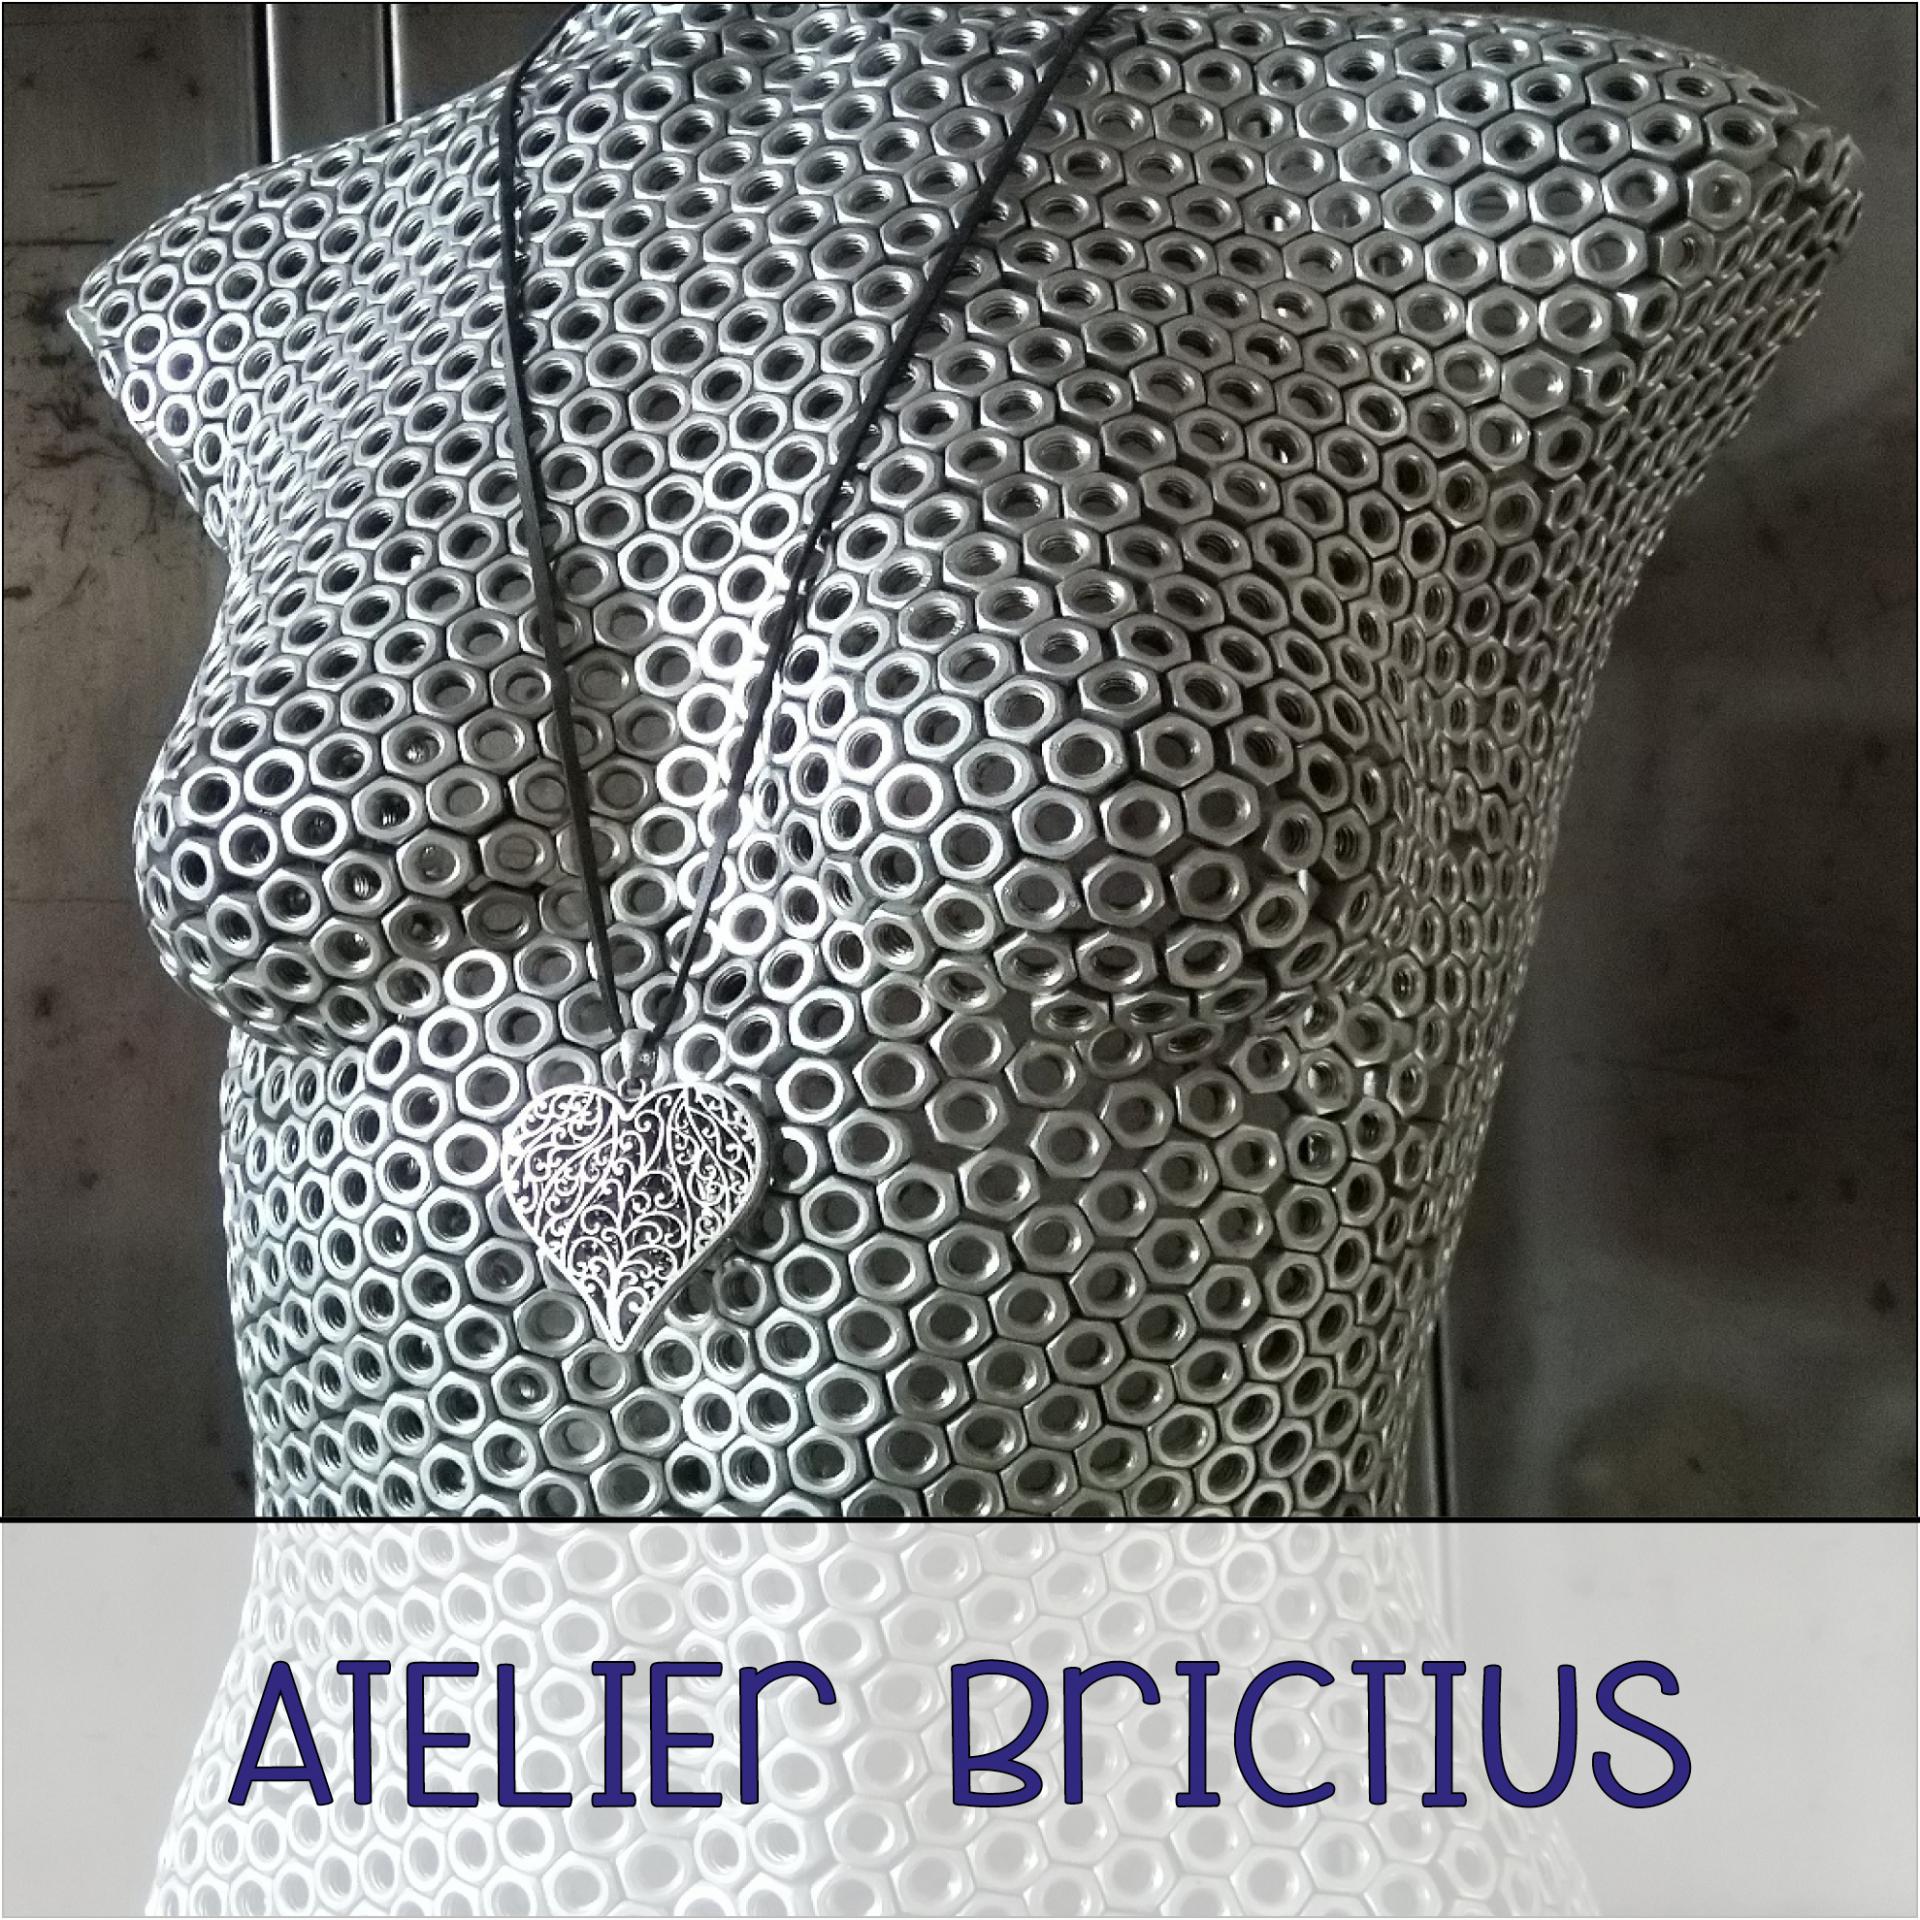 Brictius2